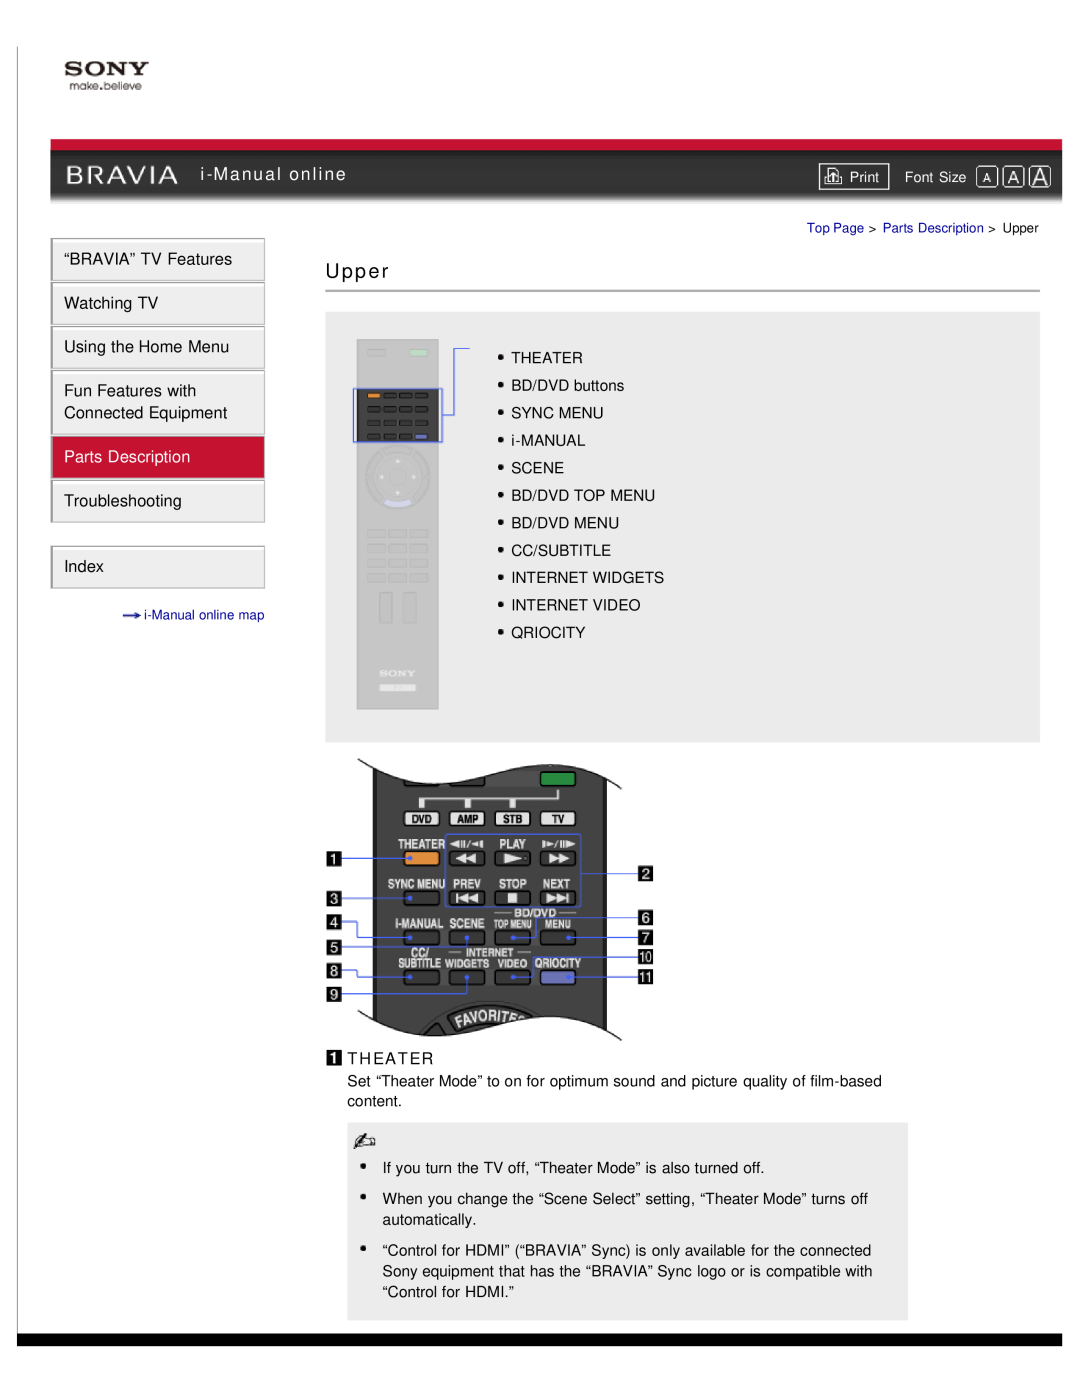 Sony NX80X manual Upper, i-Manual online, Parts Description, Theater 